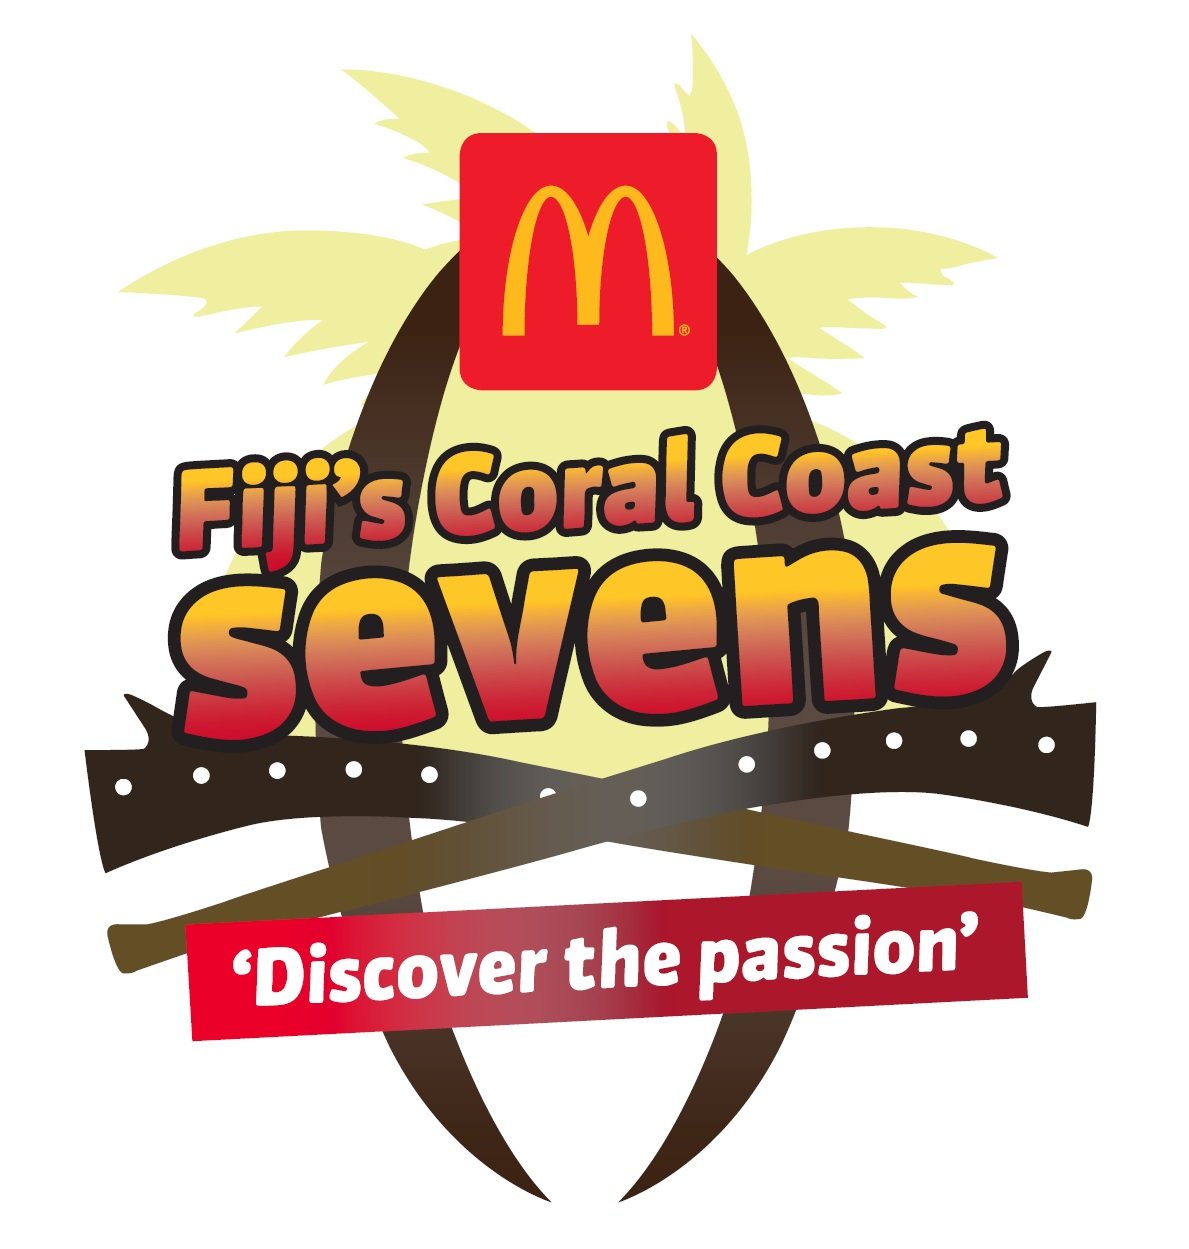 McDonald's Fiji's Coral Coast Sevens